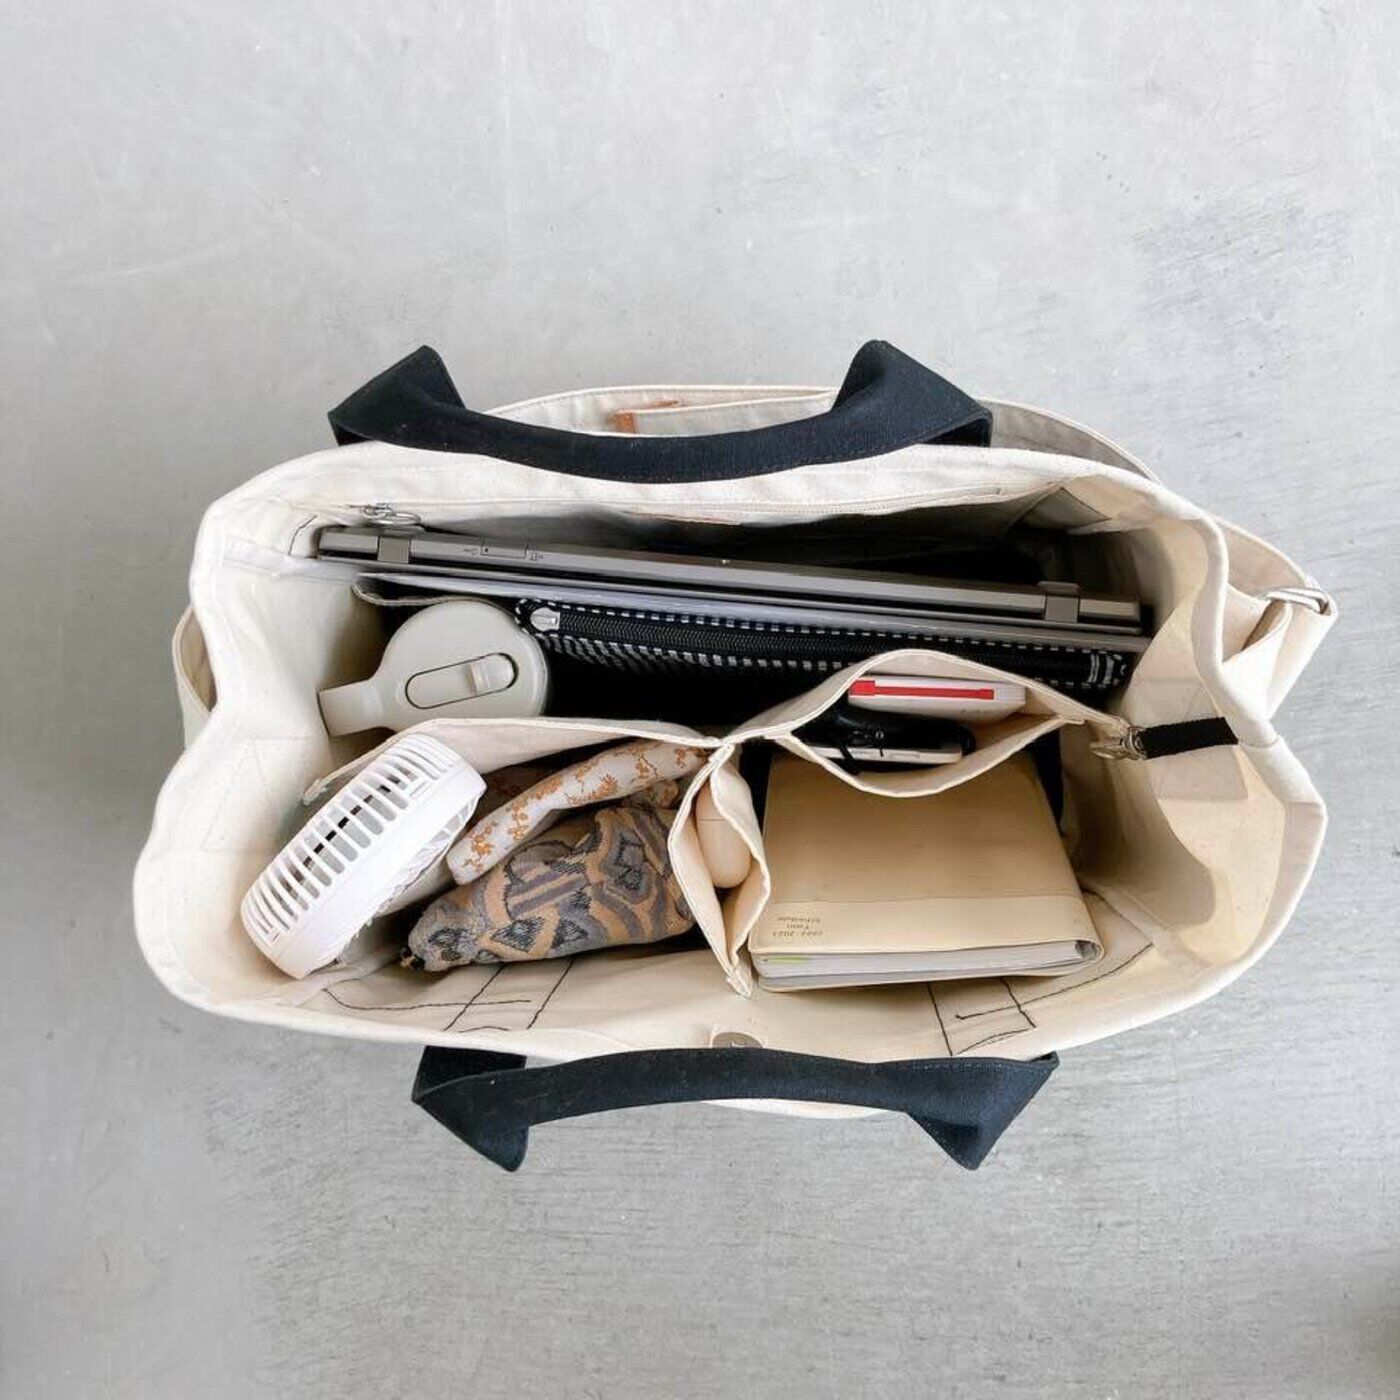 L'AMIPLUS|Kanoco×ラミプリュス　軽やか帆布のマザーズTバッグ|13インチのPCがゆったりと入るほか、大きなT字の仕切りには小さなポケットもついていて、財布やイヤホンなど、身の回りのアイテムも整理ができます。